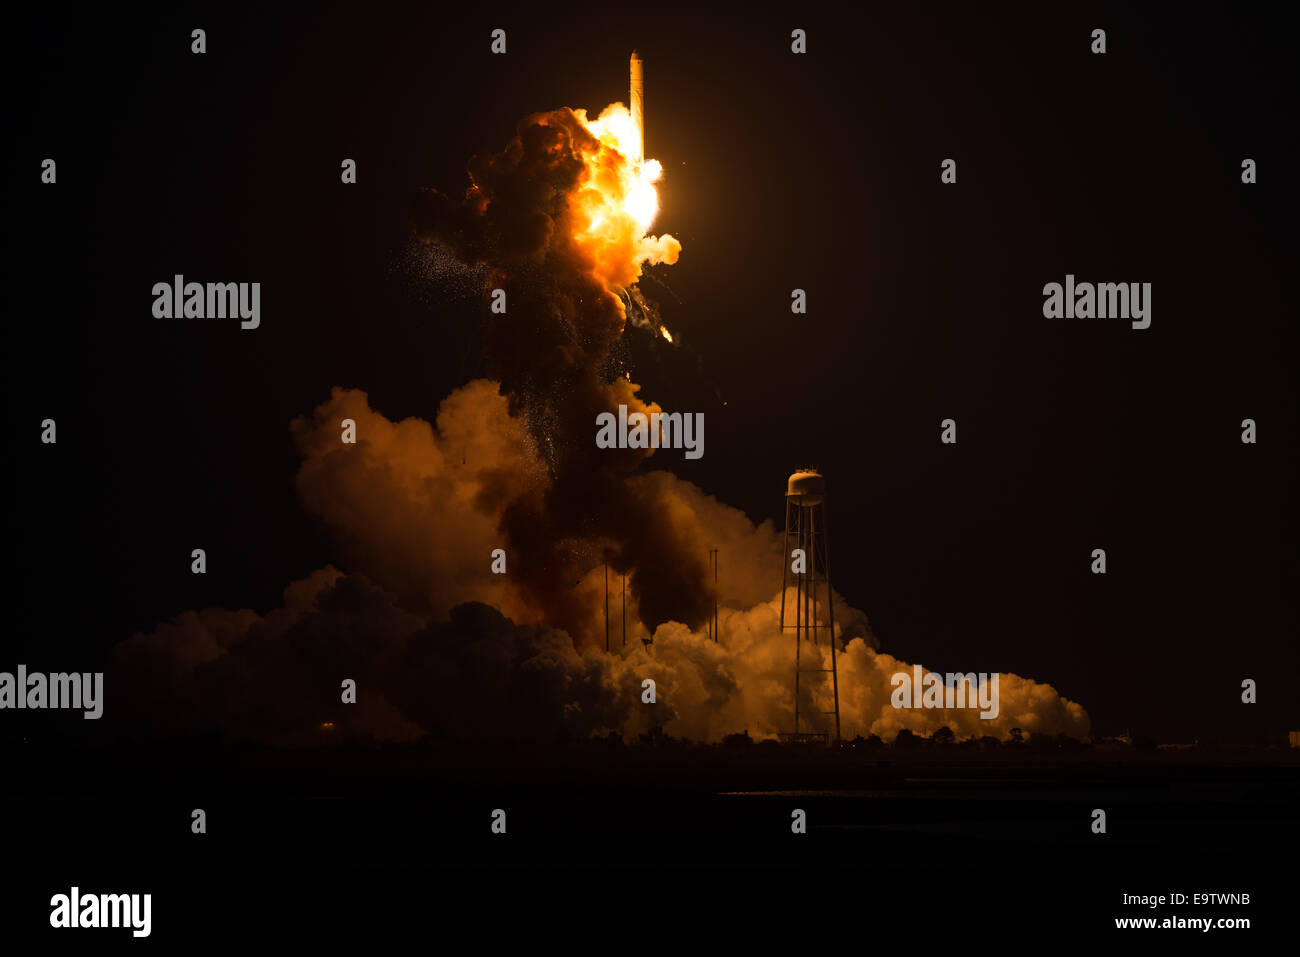 Der Orbital Sciences Corporation Antares-Rakete, mit der Cygnus Raumfahrzeug an Bord der Mid-Atlantic Regional Spaceport Pad 0A, Dienstag, 28. Oktober 2014, bei der NASA Wallops Flight Facility in Virginia eine katastrophale Anomalie Momente nach dem Start leidet. Stockfoto